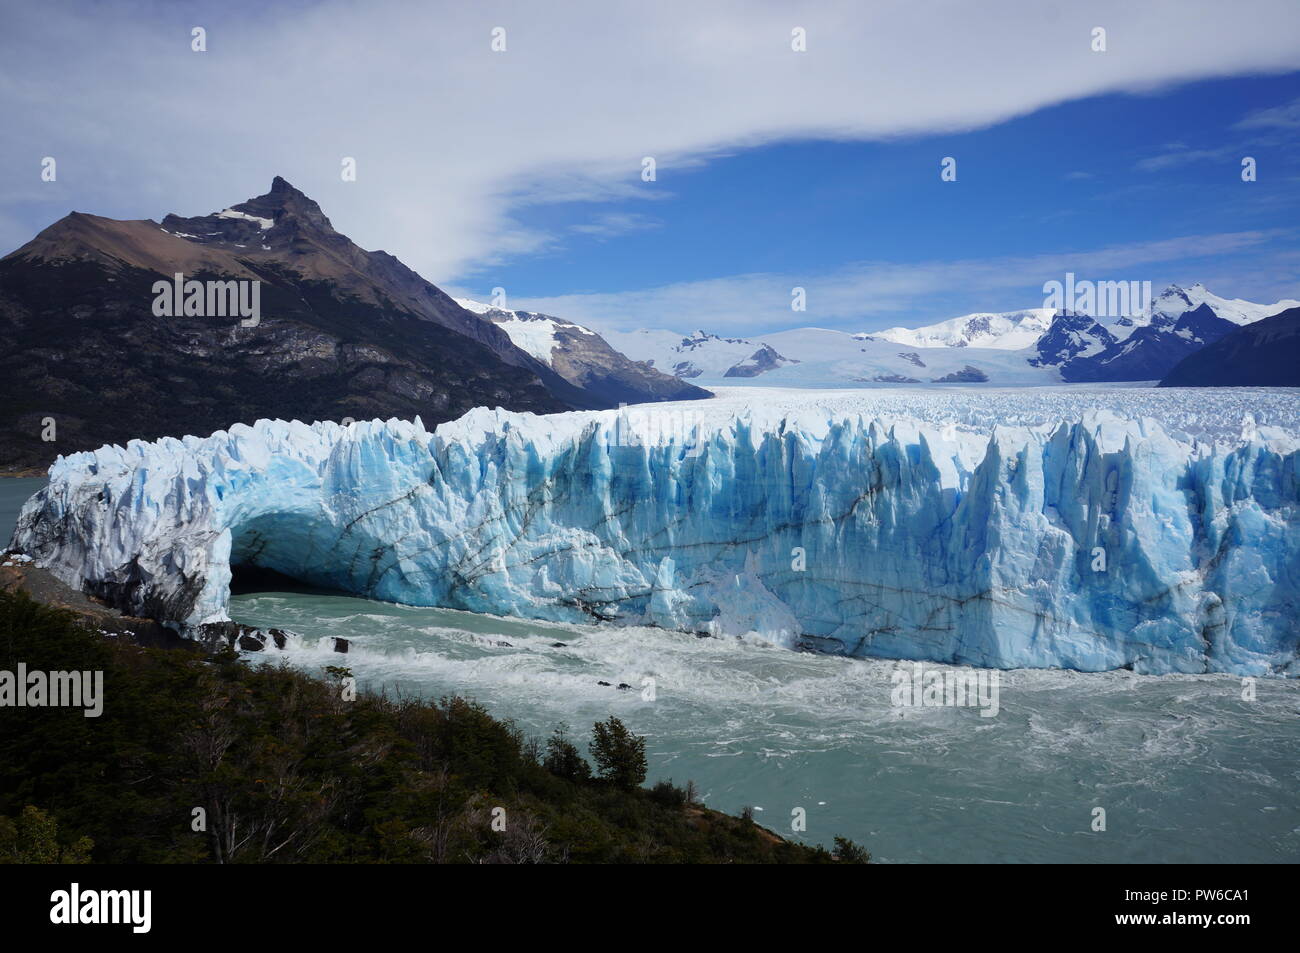 Ghiacciaio Perito Moreno - la terza più grande campo di ghiaccio nel mondo, un ghiacciaio situato nel parco nazionale Los Glaciares in Patagonia, Argentina. Foto Stock